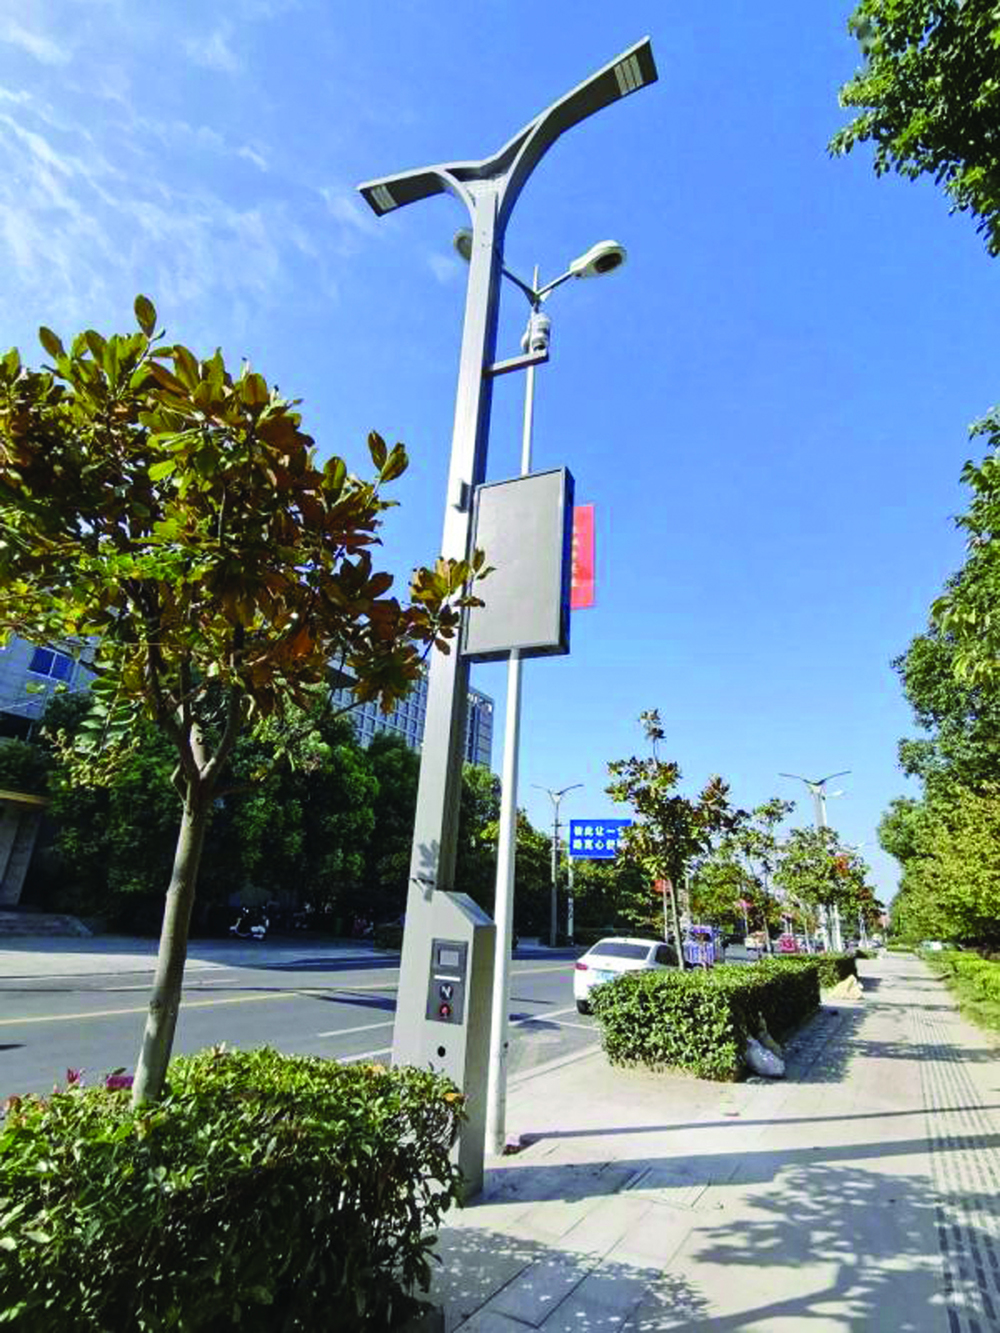 5G luz inteligente de la calle para realizar la función de alarma automática, carga, etc.